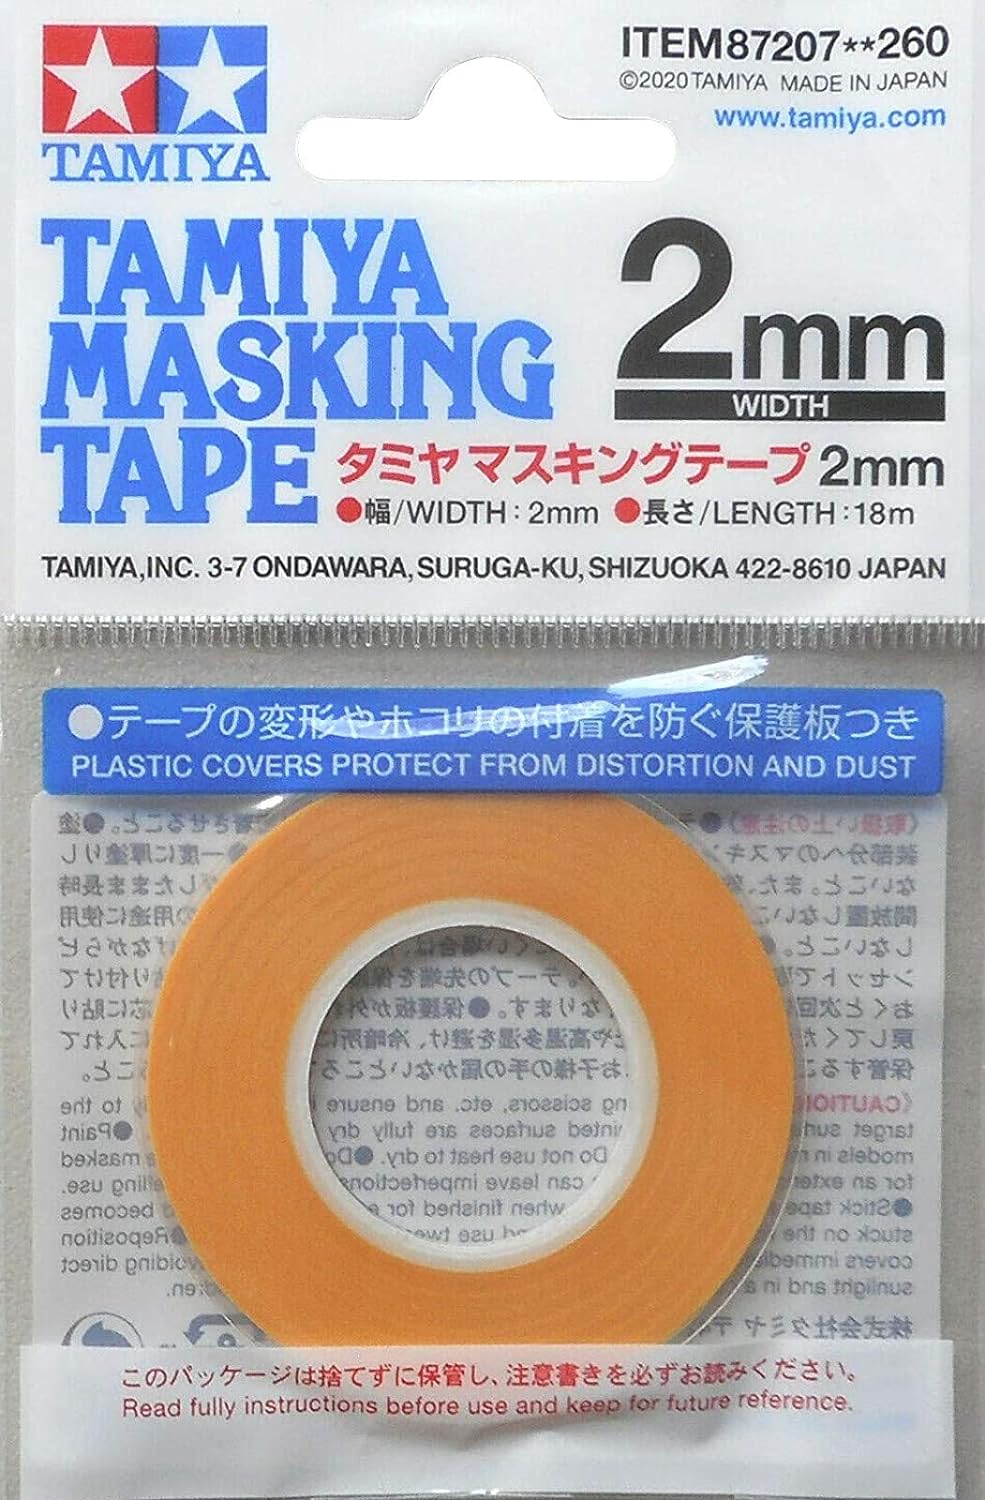 Tamiya: Masking Tape